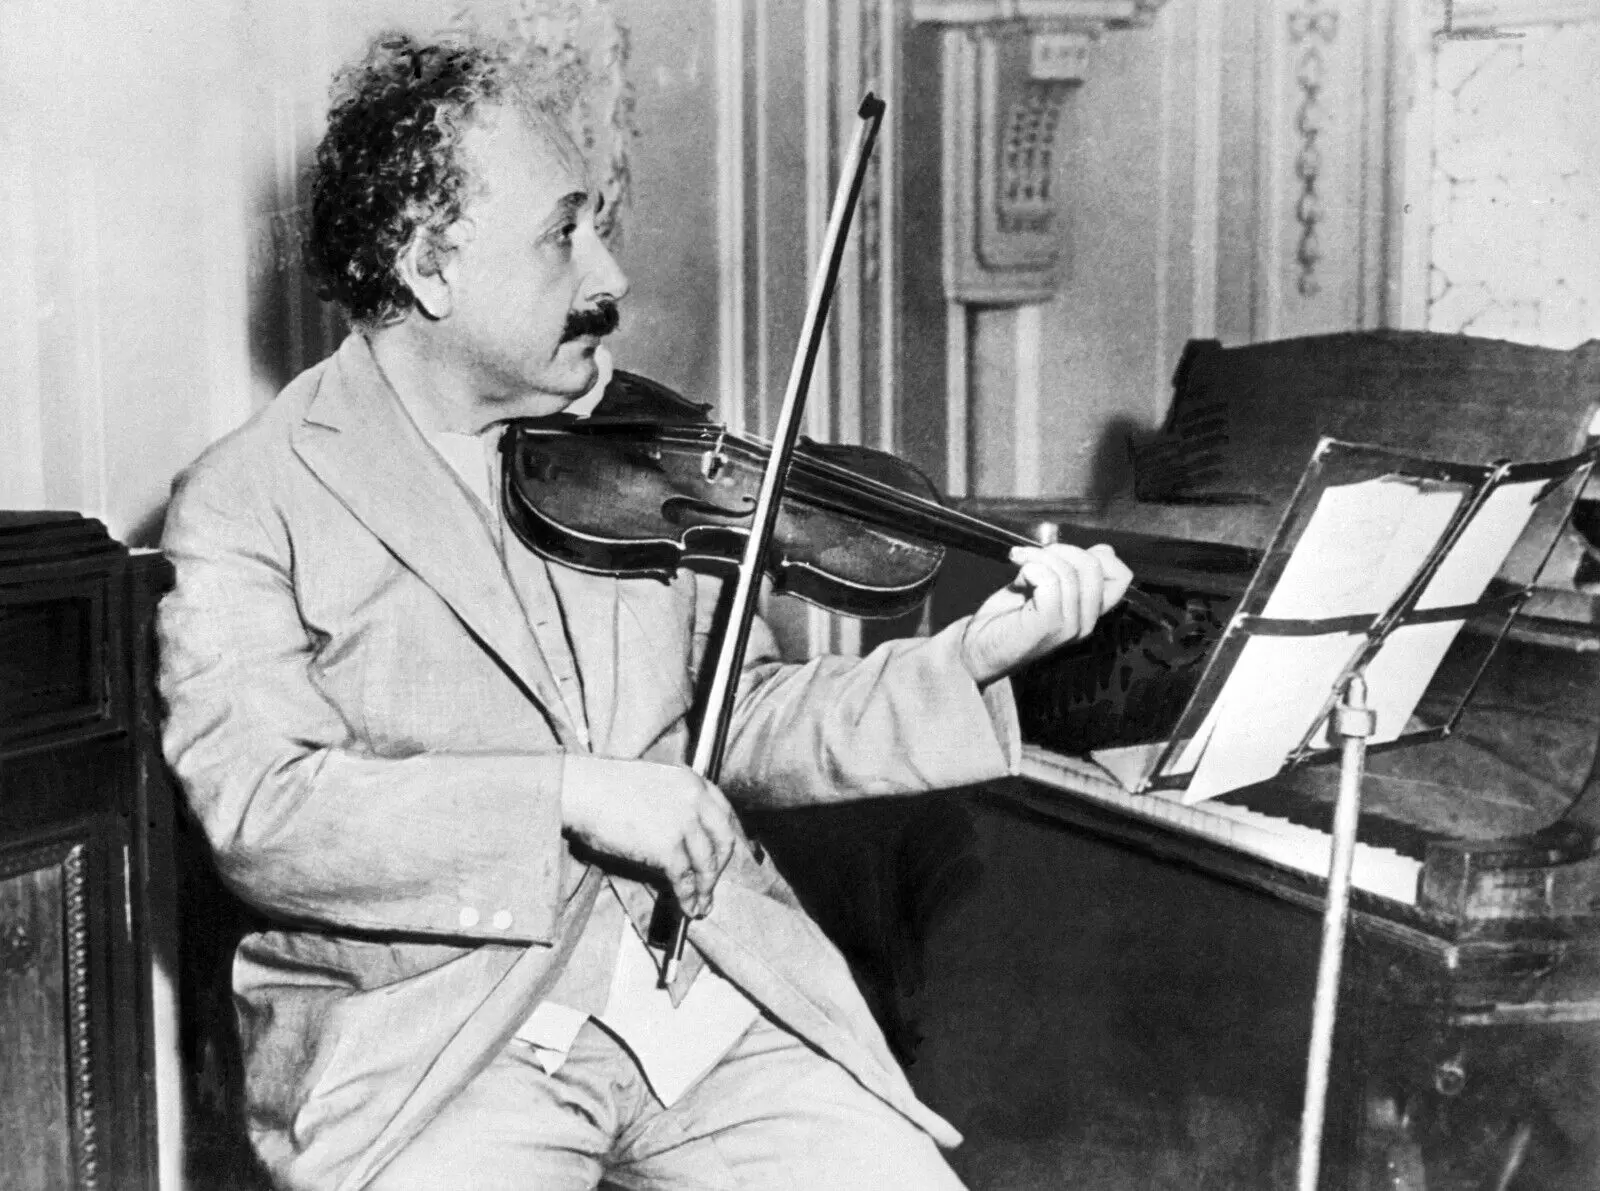 albert einstein hobby violin - What was Albert Einstein's favorite hobby